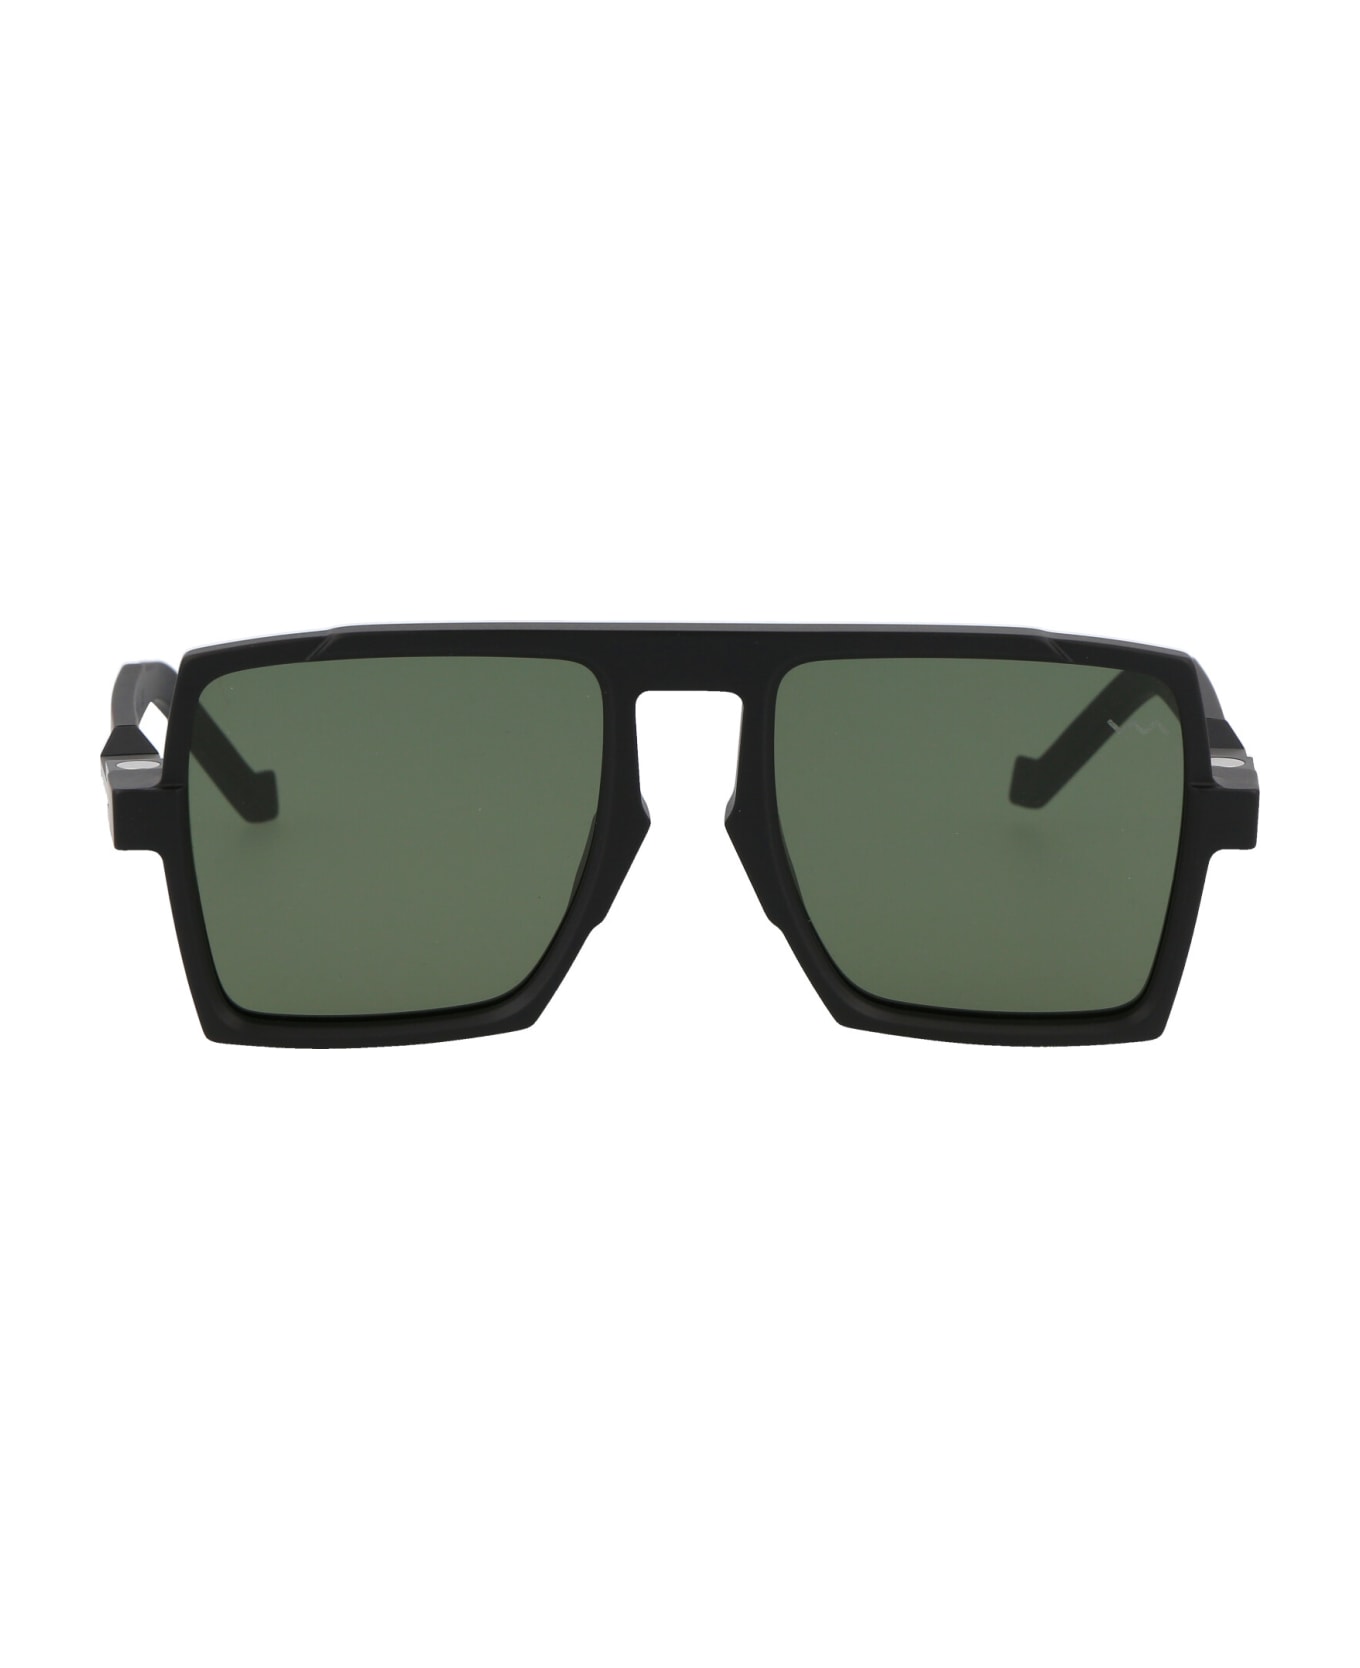 VAVA Bl0026 Sunglasses - Montblanc tortoiseshell-effect square-frame sunglasses